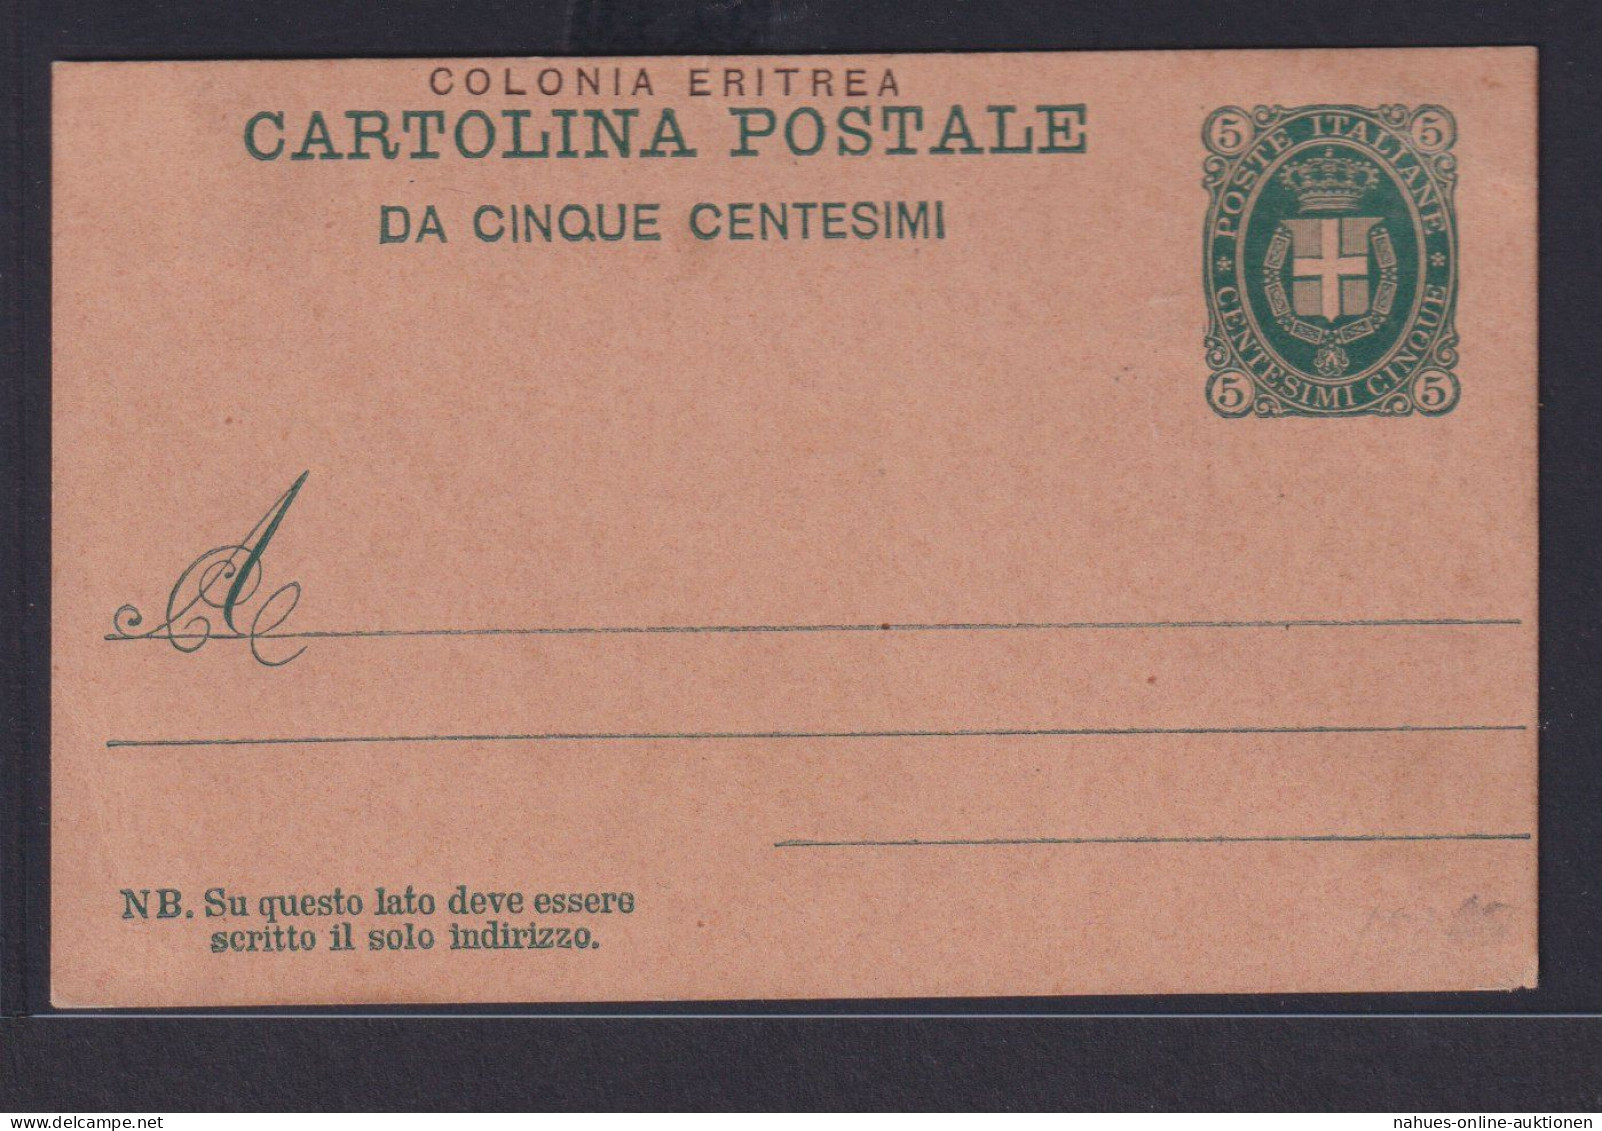 Eritrea Ostafrika Italien Kolonien Gansache Postkarte 5 C. Grün P 1 - Ivory Coast (1960-...)